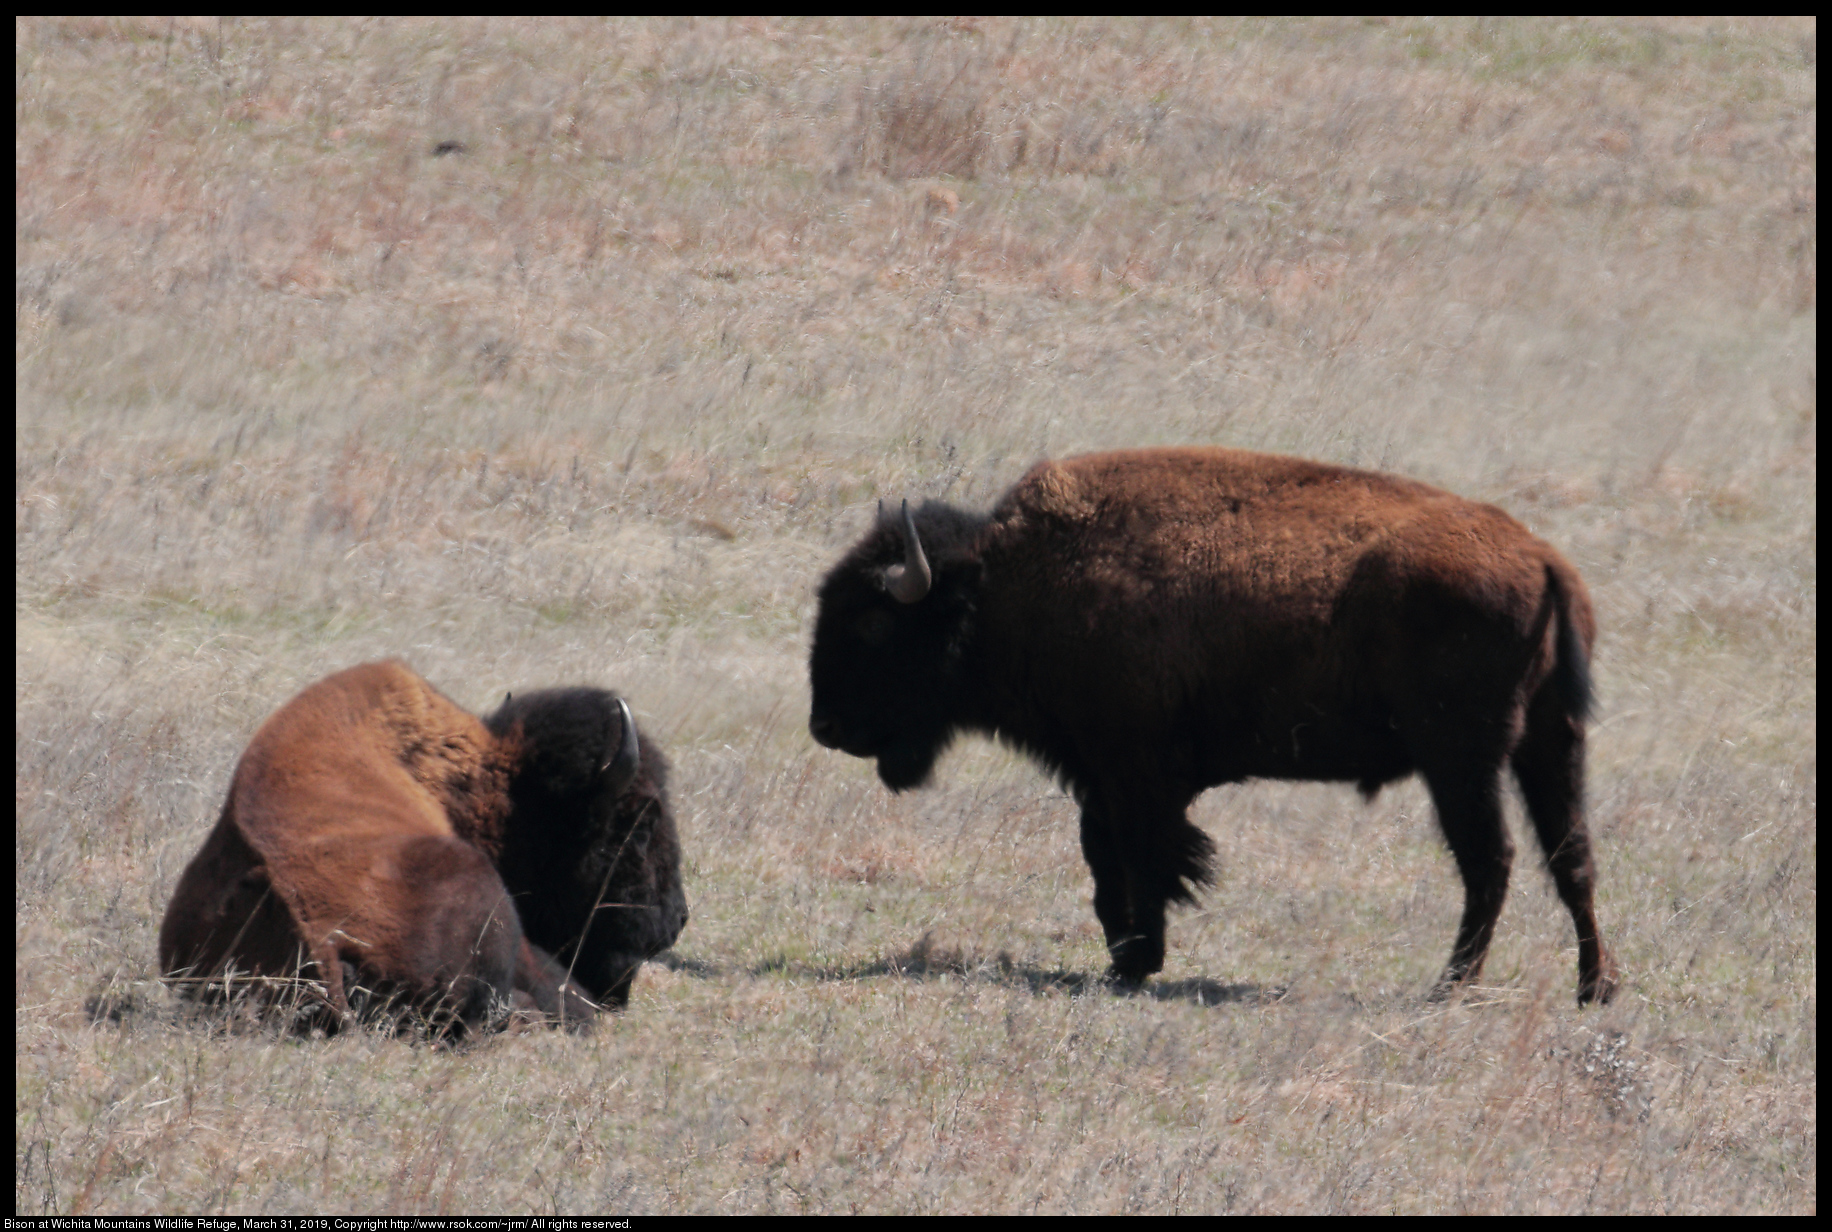 Bison at Wichita Mountains Wildlife Refuge, March 31, 2019